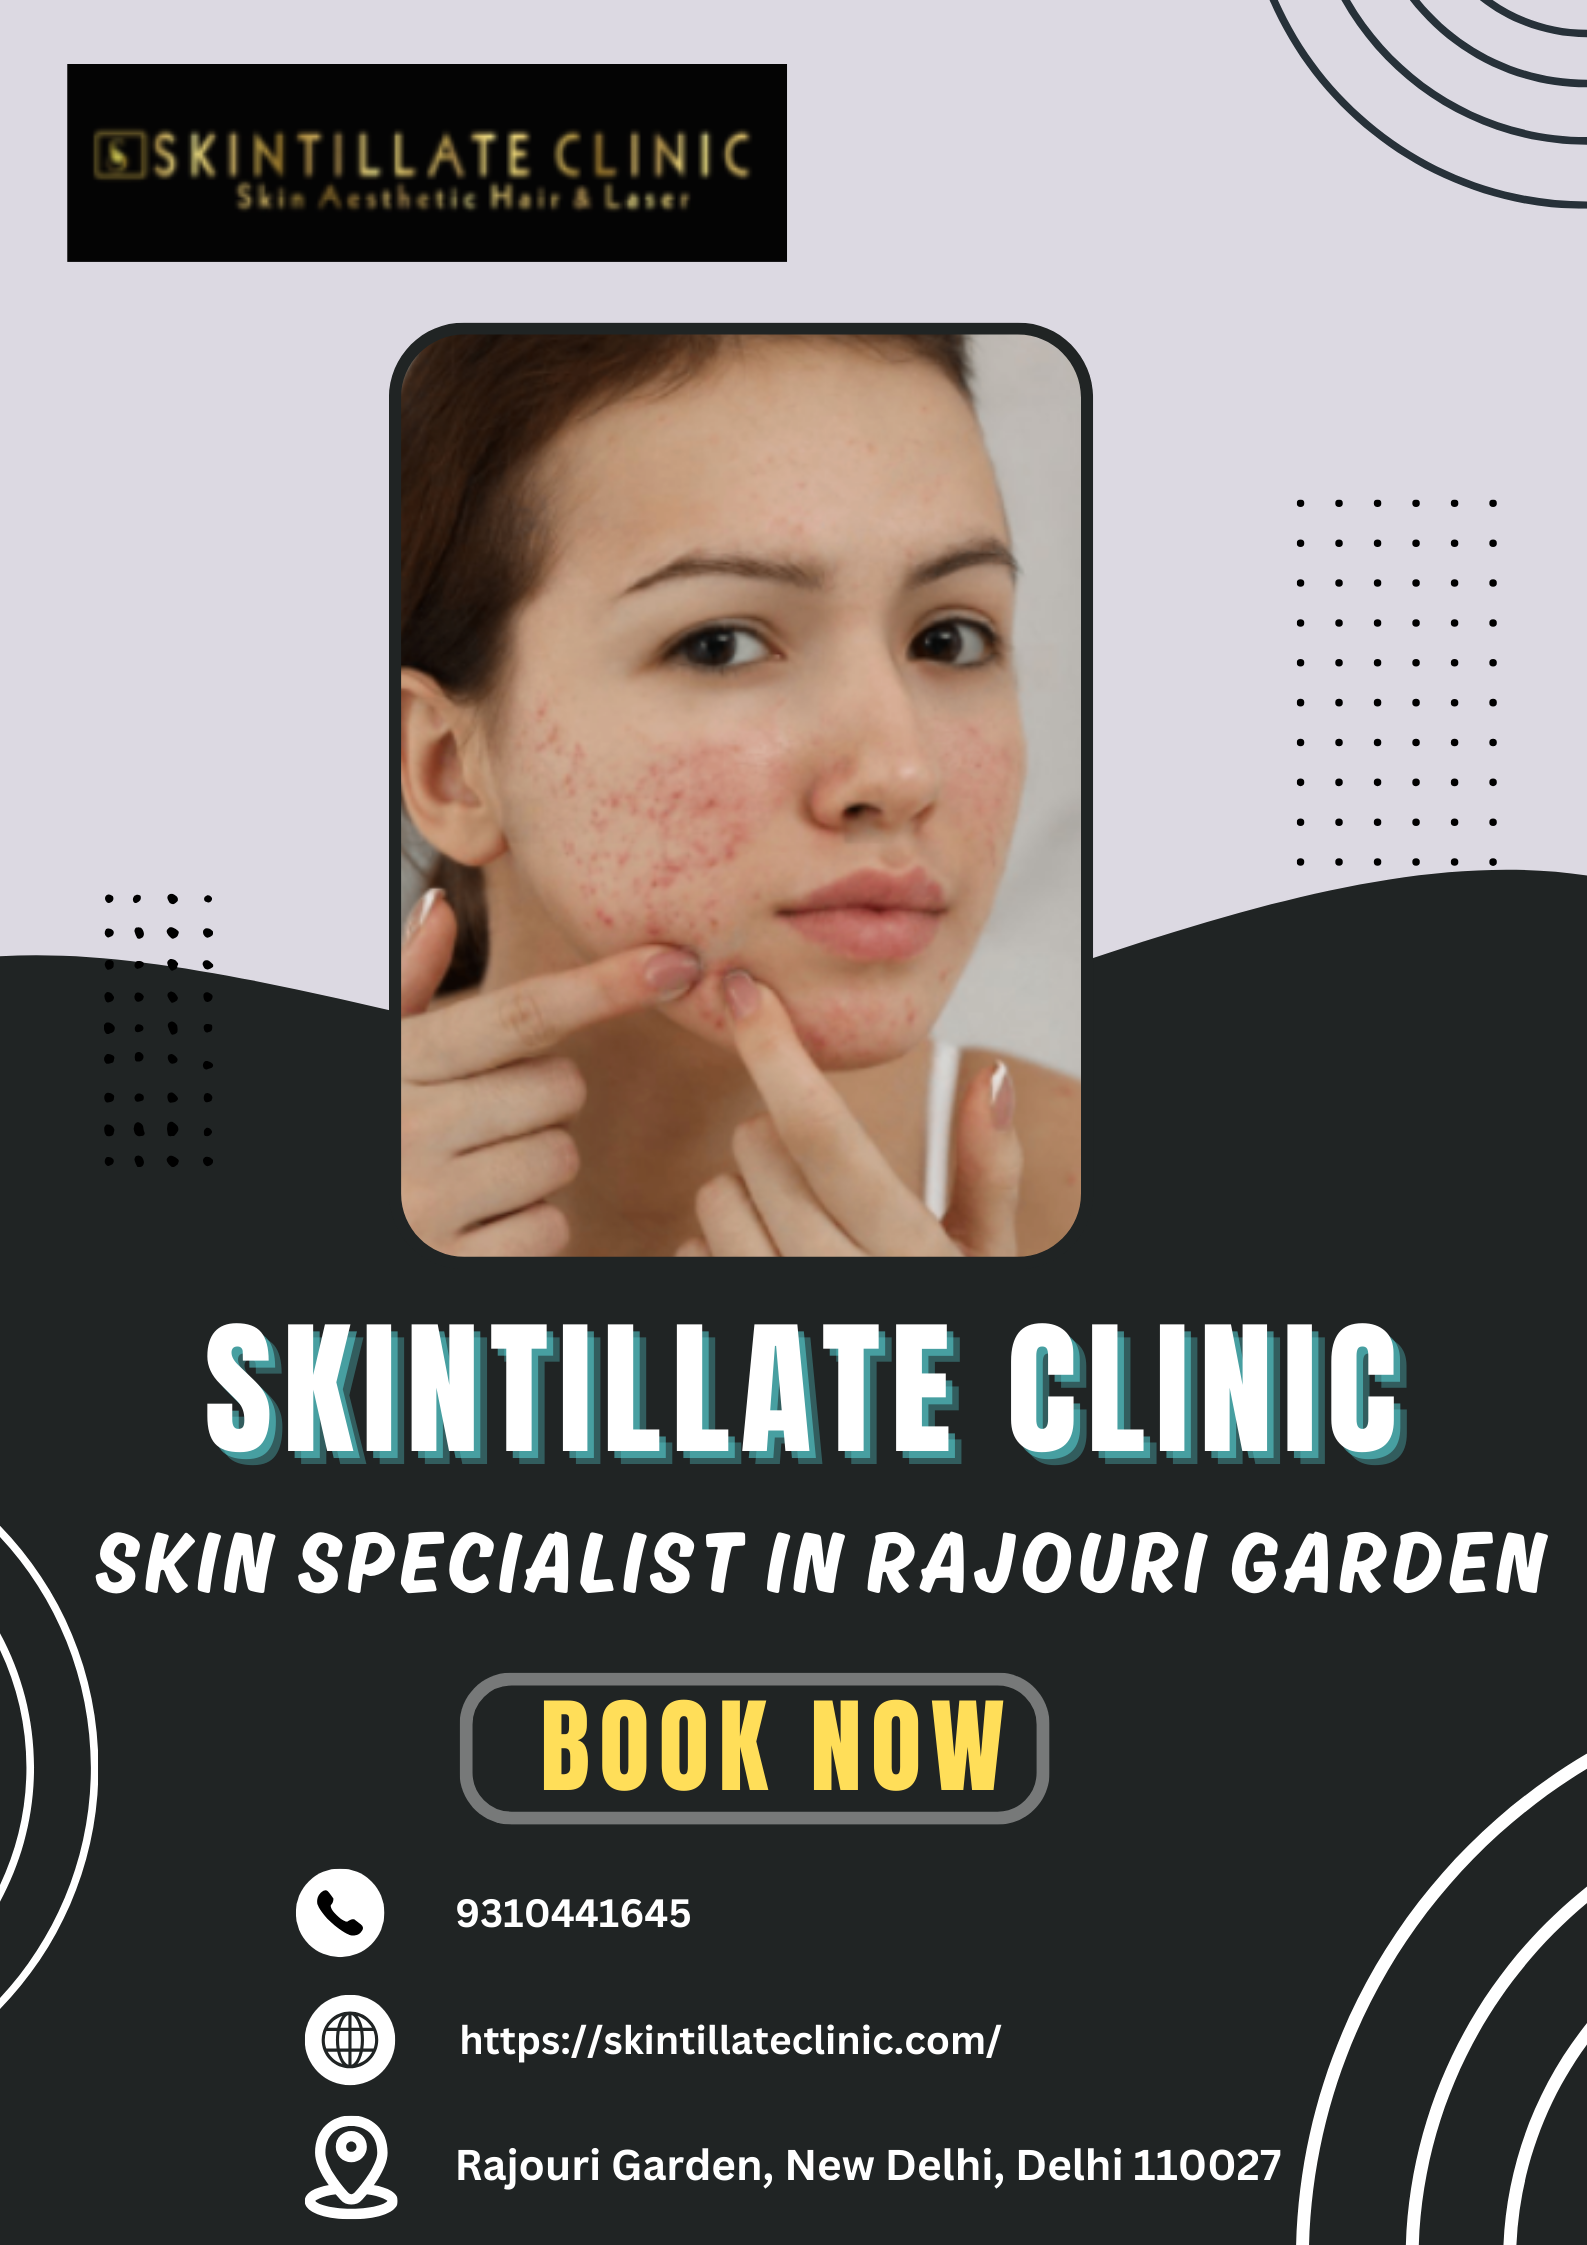 Best Dermatologists & Skin specialists in Rajouri Garden at Skintillate Clinic – Skintillate Clinic